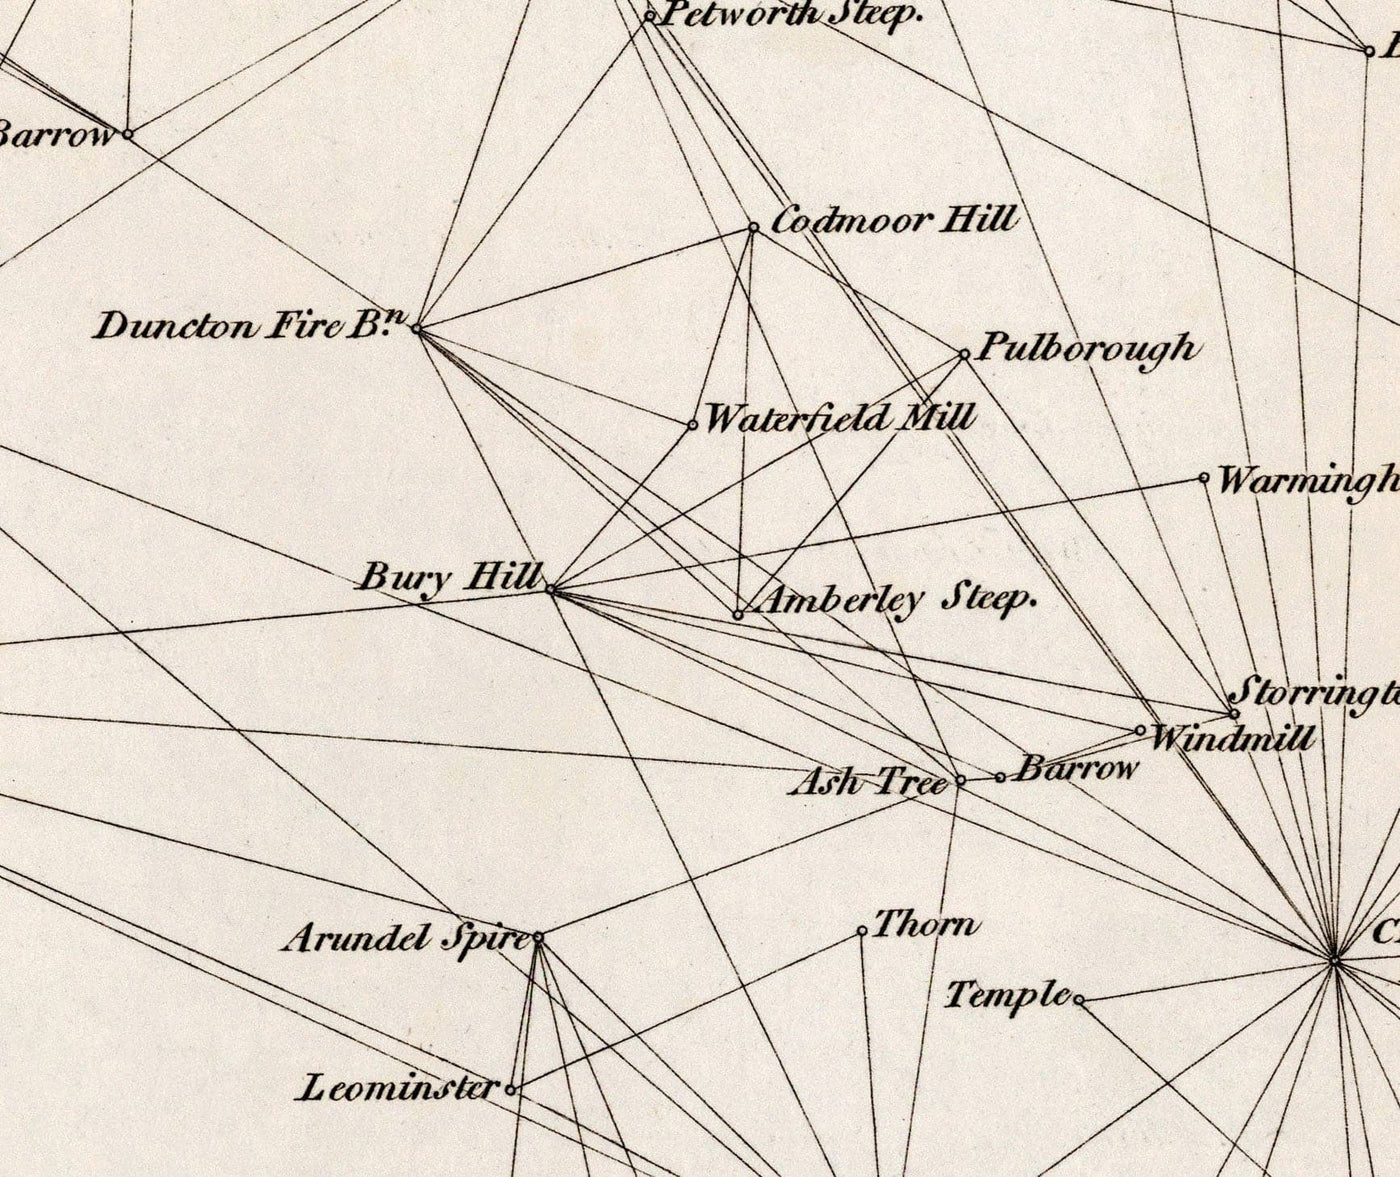 Alte Karte von Sussex, 1811 - Erste Triangulations-Ordnance-Vermessungskarte - Hügel, Burgen, Steews